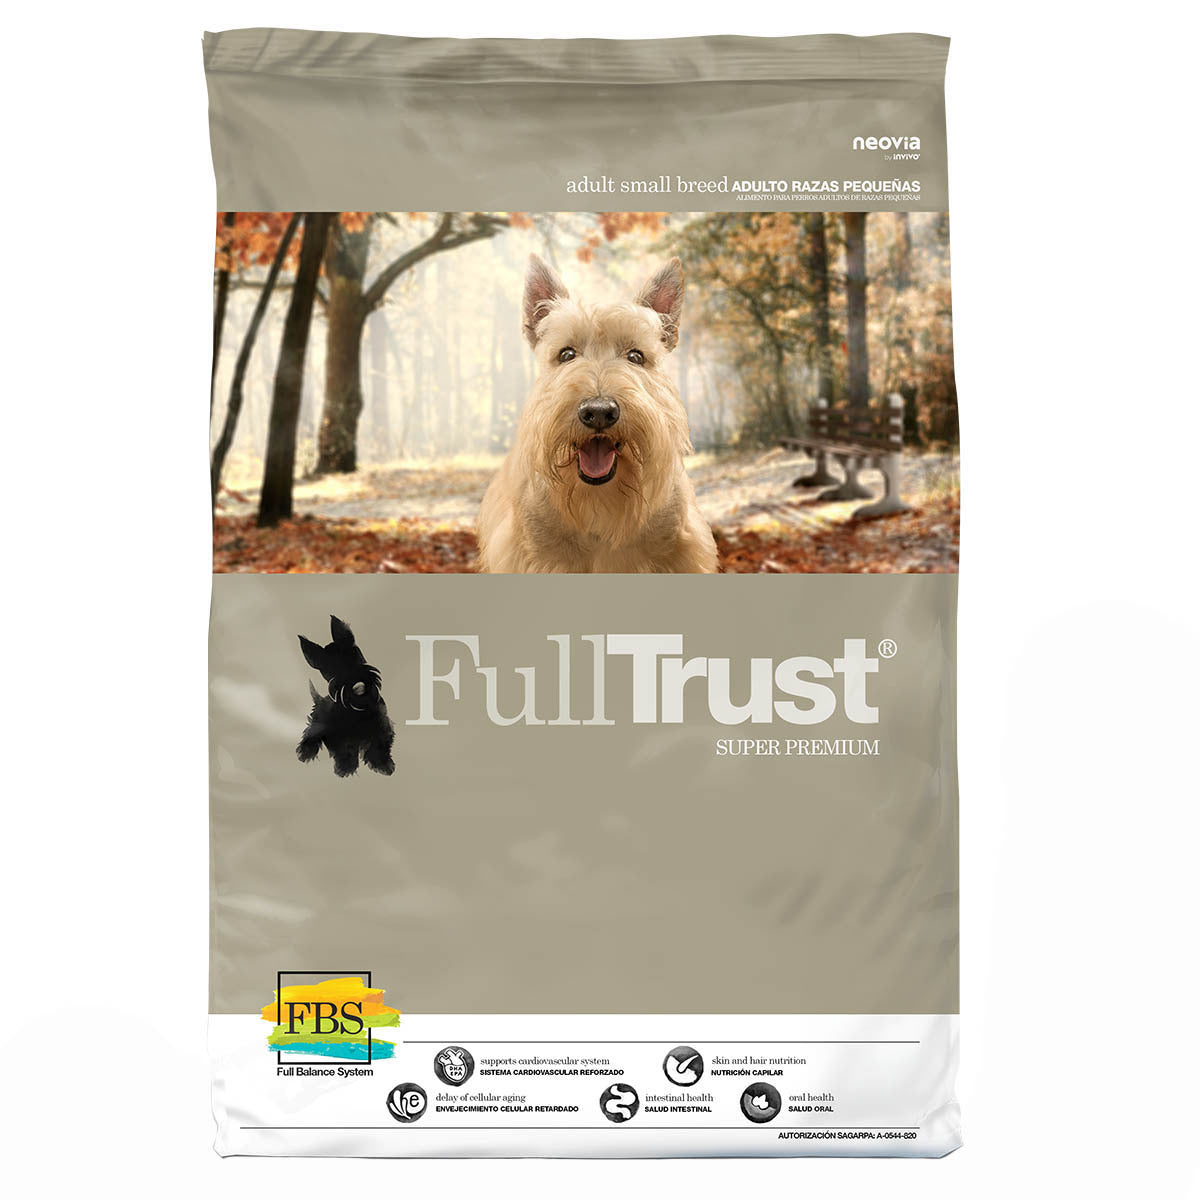 Full Trust Adulto Razas Pequeñas - Alimento para Perro Super Premium, perro, FullTrust, Mister Mascotas